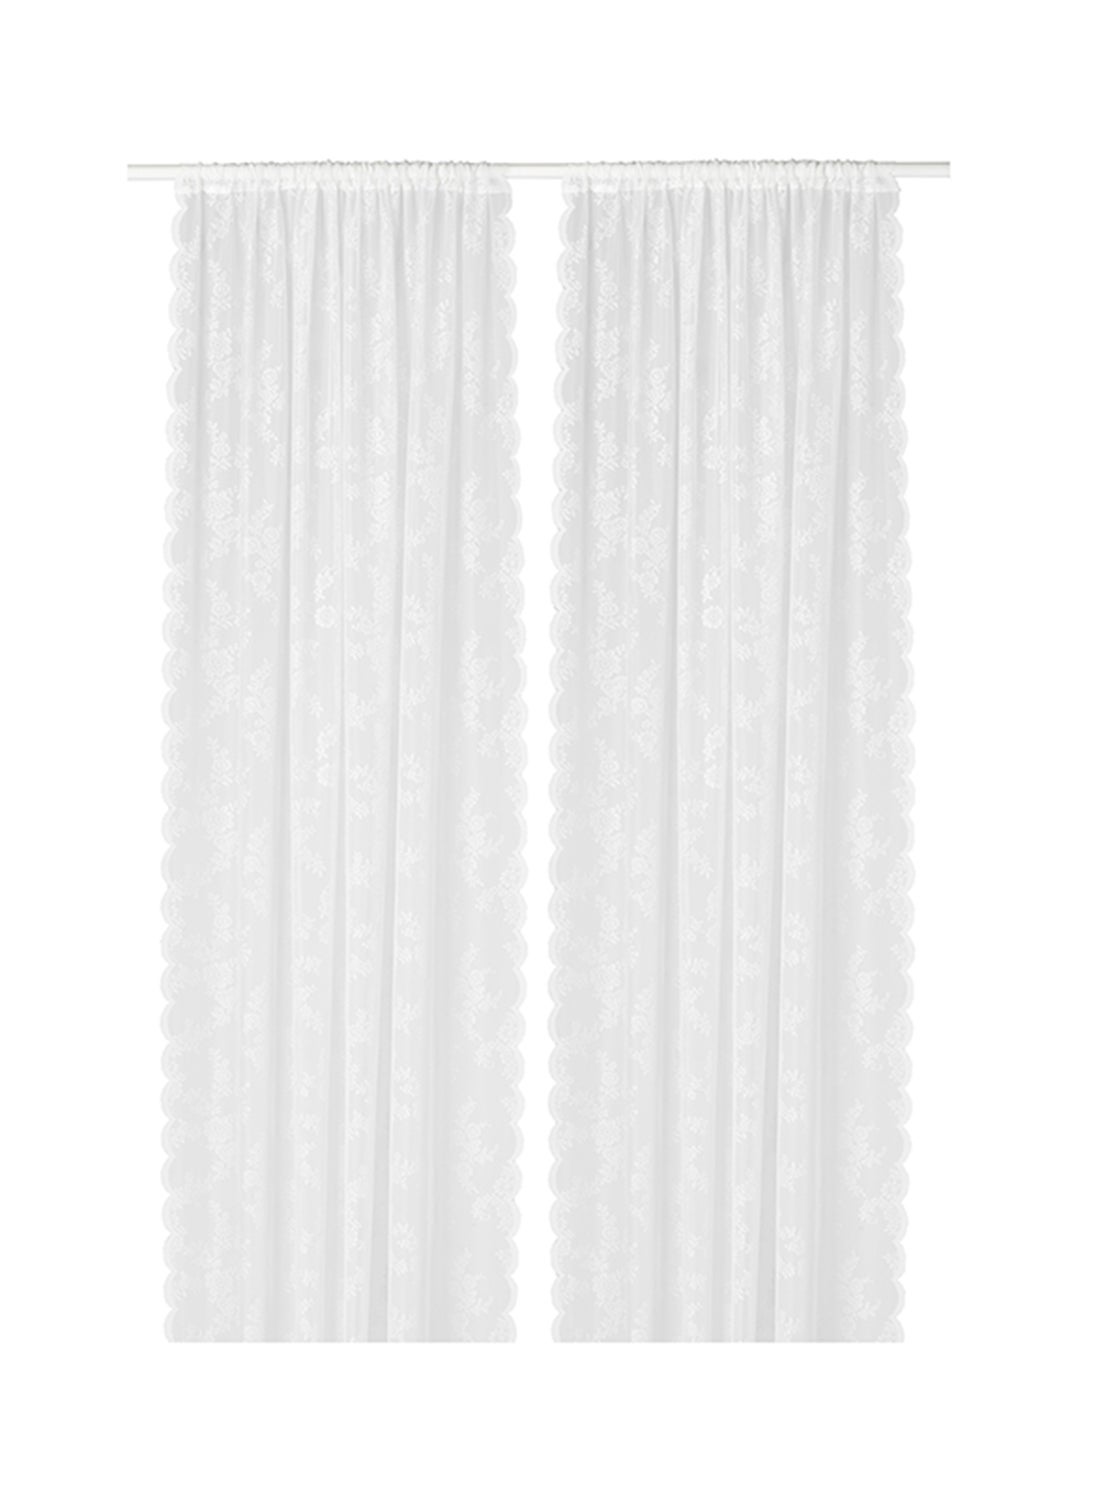 2-Piece Window Curtain Set White 145x300centimeter